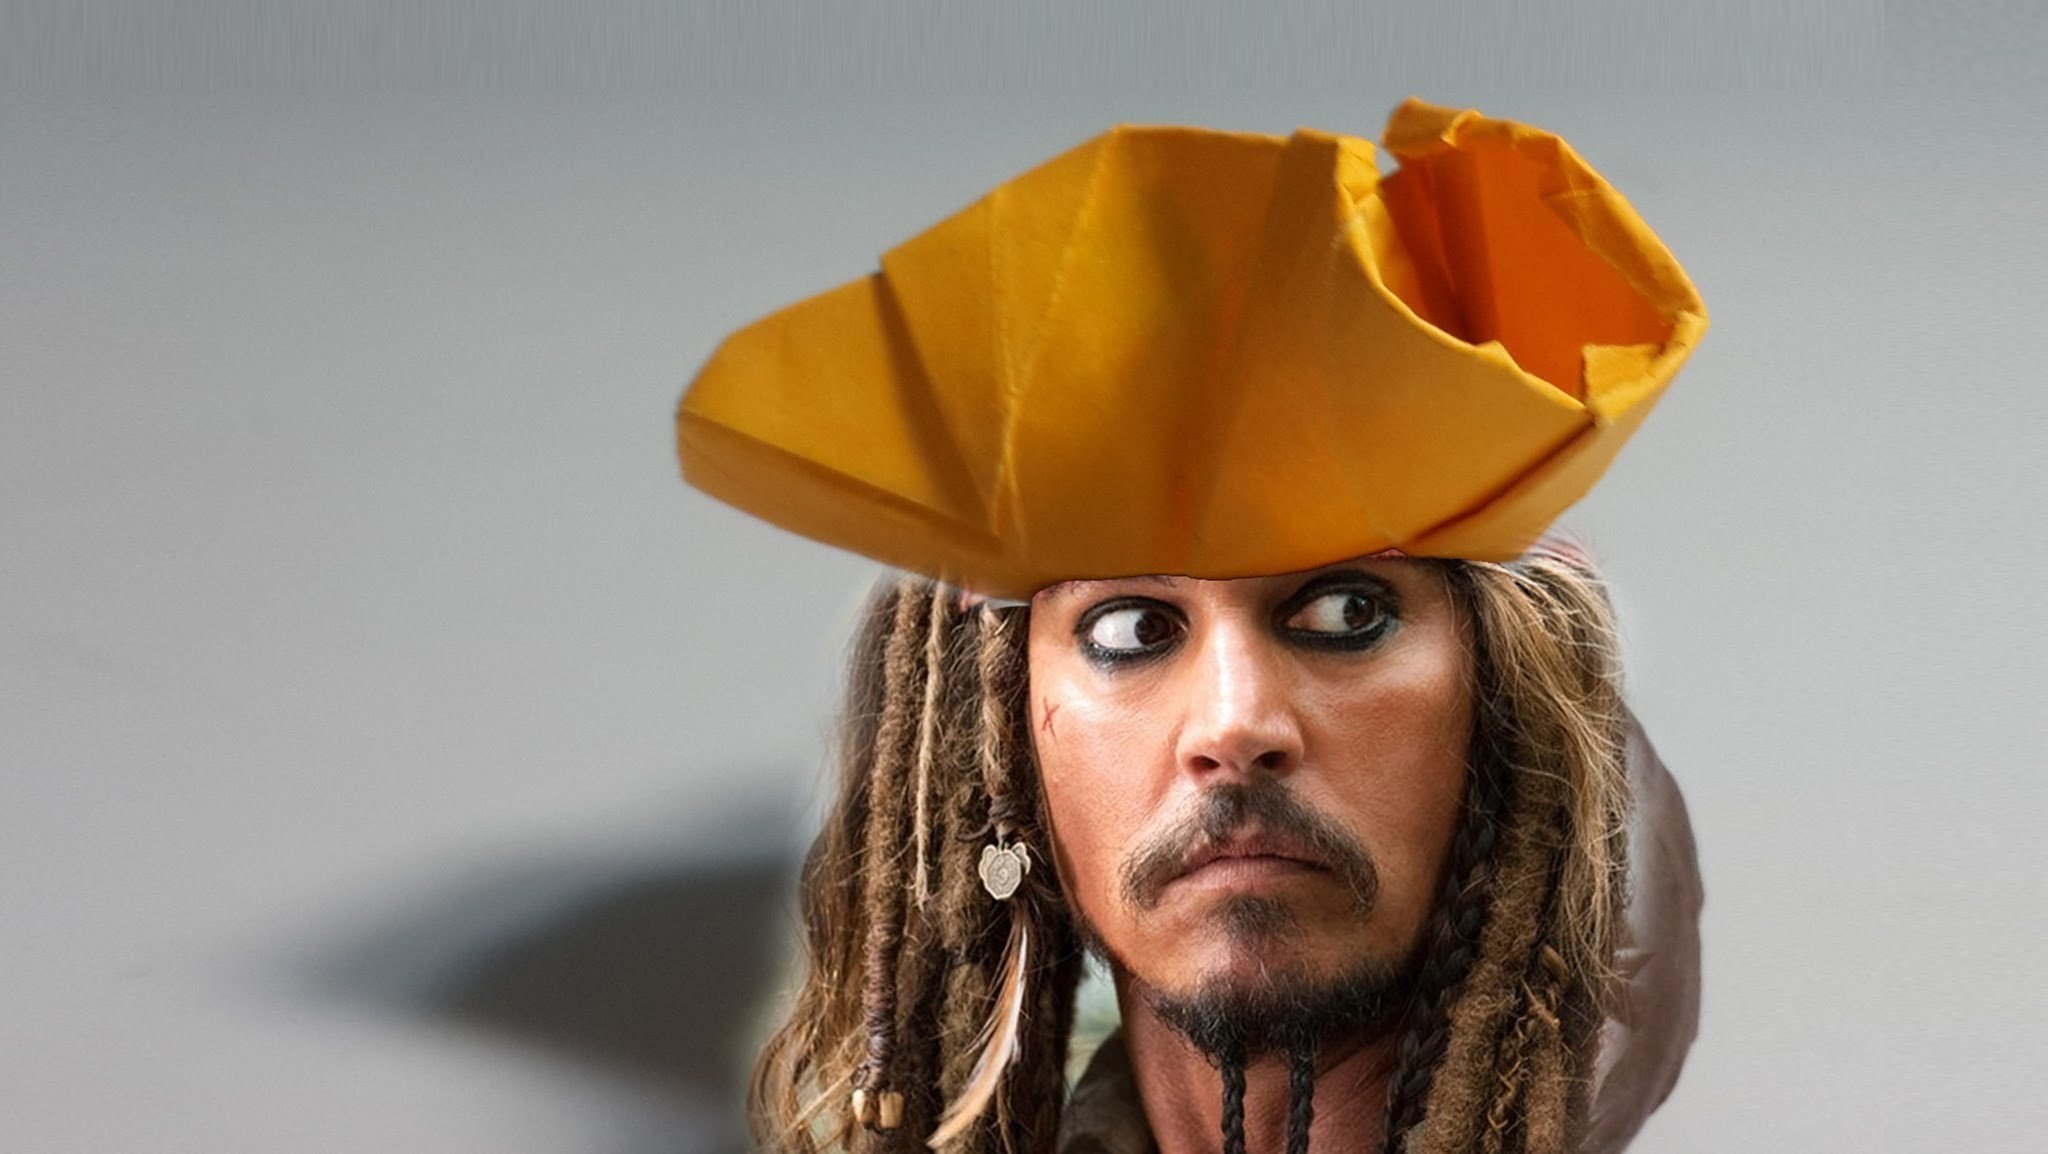 Джек шляпа. Треуголка Джека воробья. Пираты Карибского моря шляпа Джека воробья. Шляпа треуголка капитана Джека воробья. Шляпа Джека воробья своими руками.